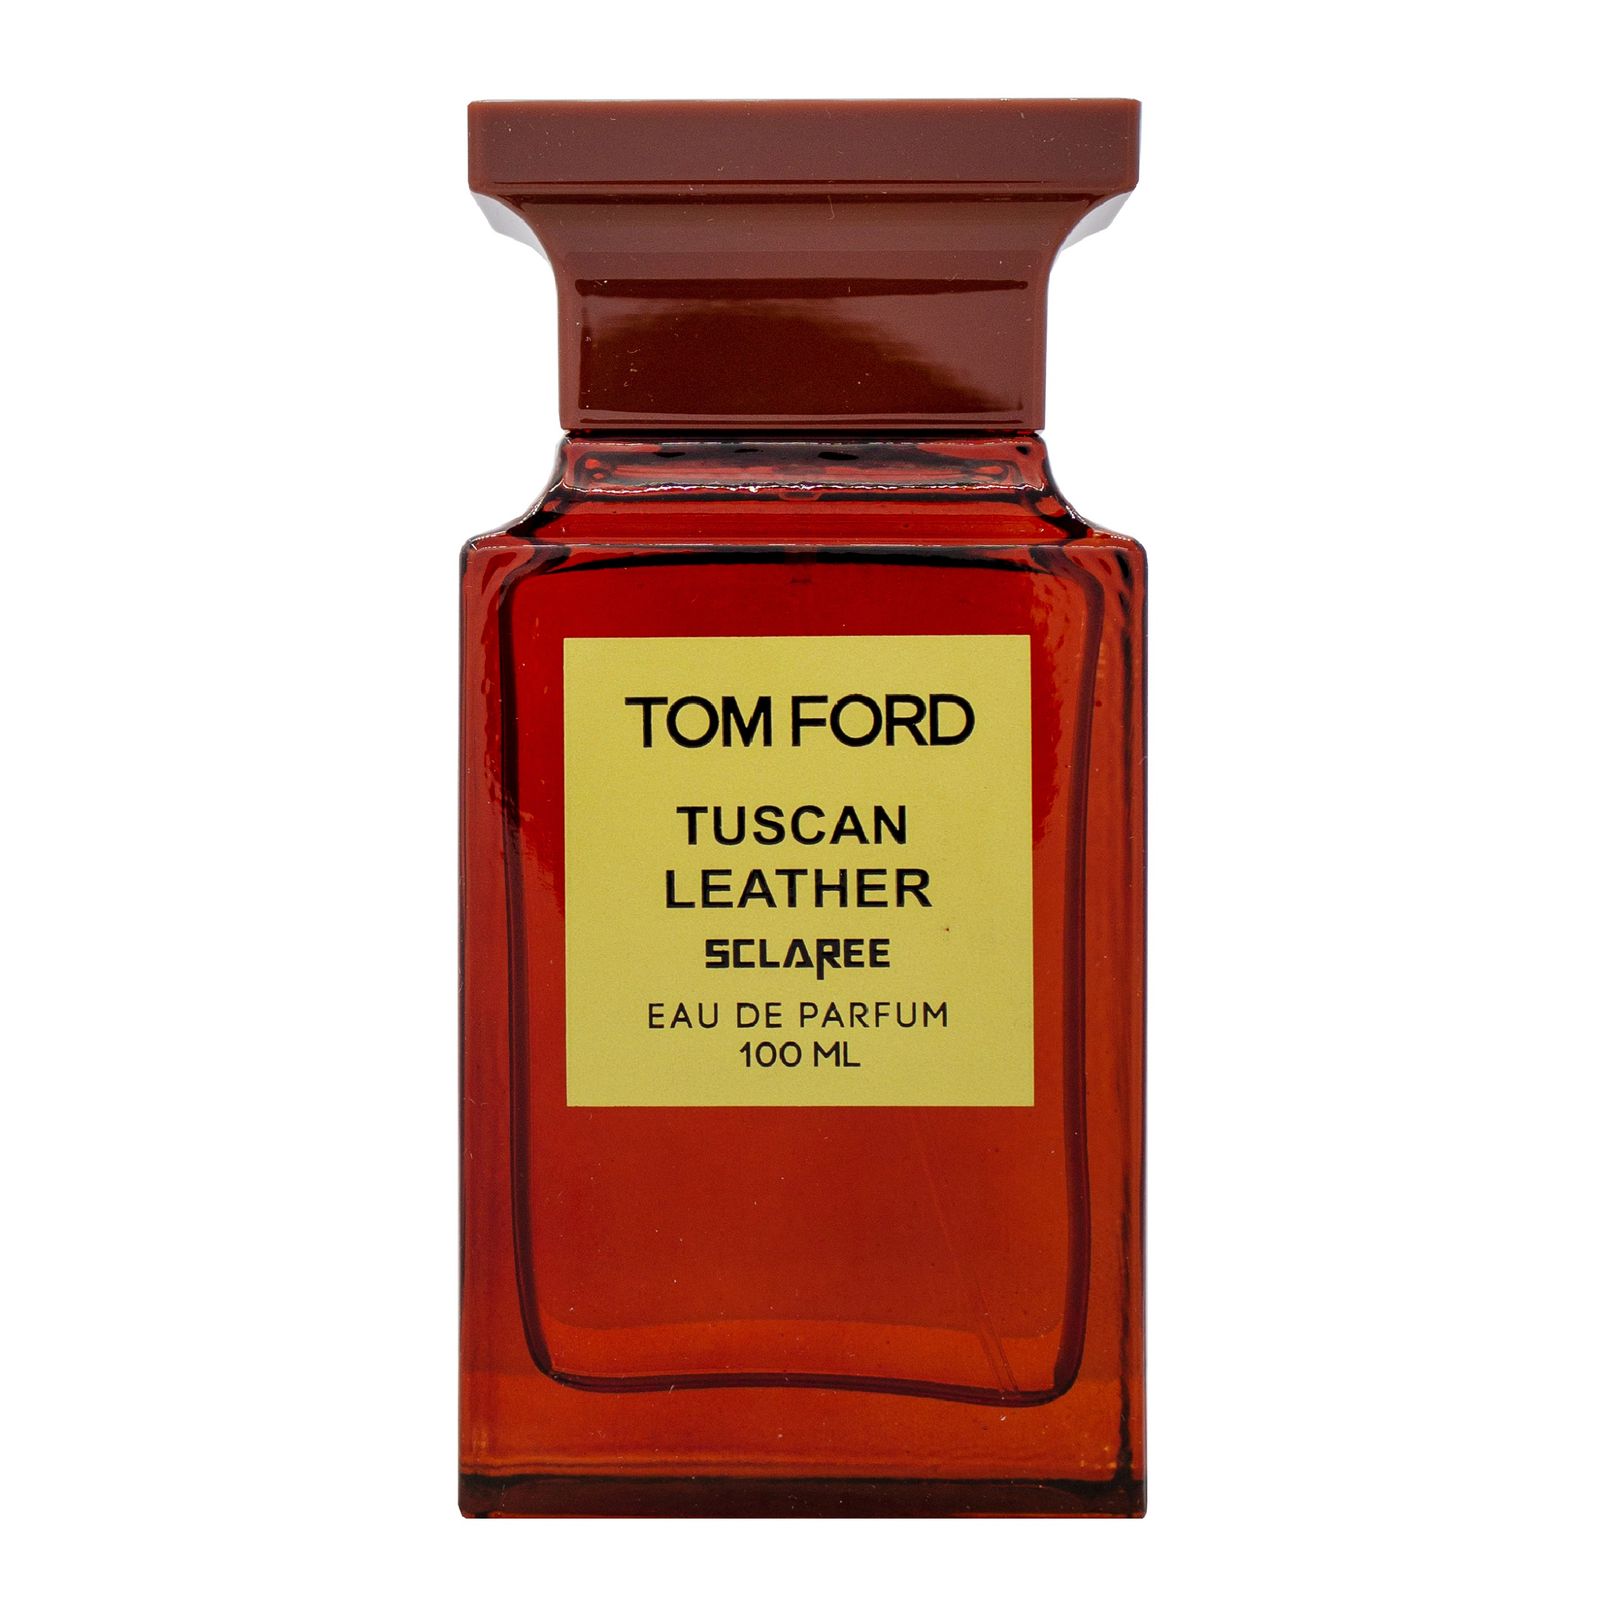 ادو پرفیوم مردانه اسکلاره مدل Tom Ford Tuscan Leather حجم 100 میلی لیتر -  - 1